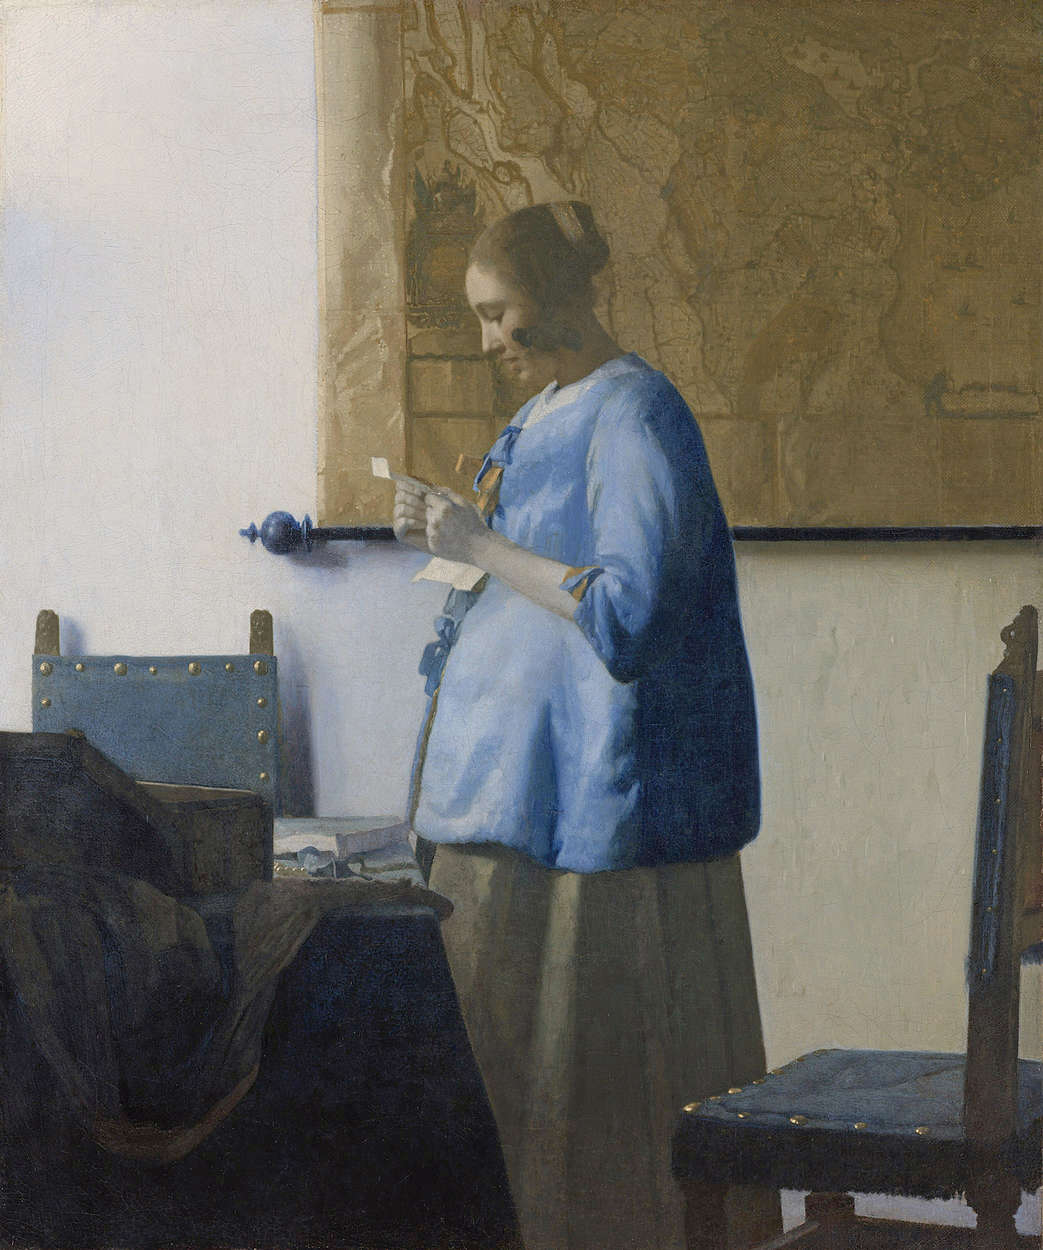             Muurschildering "Vrouw die een brief leest" van Jan Vermeer
        